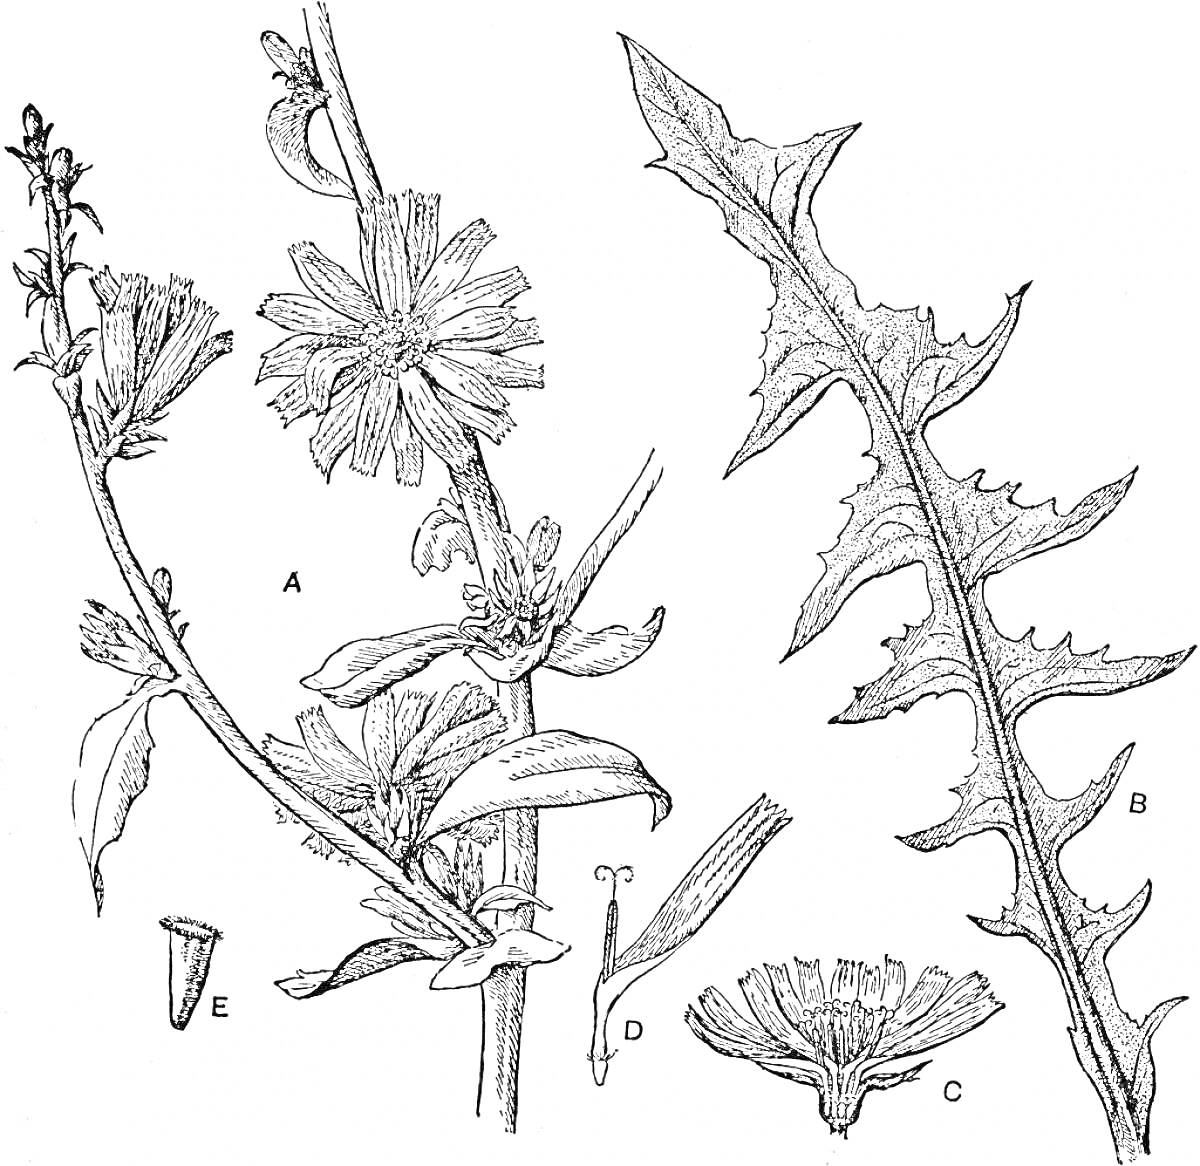 Раскраска ветка цветущего цикория с цветами и листьями, листья цикория и отдельные части цветка (венчик, семена)